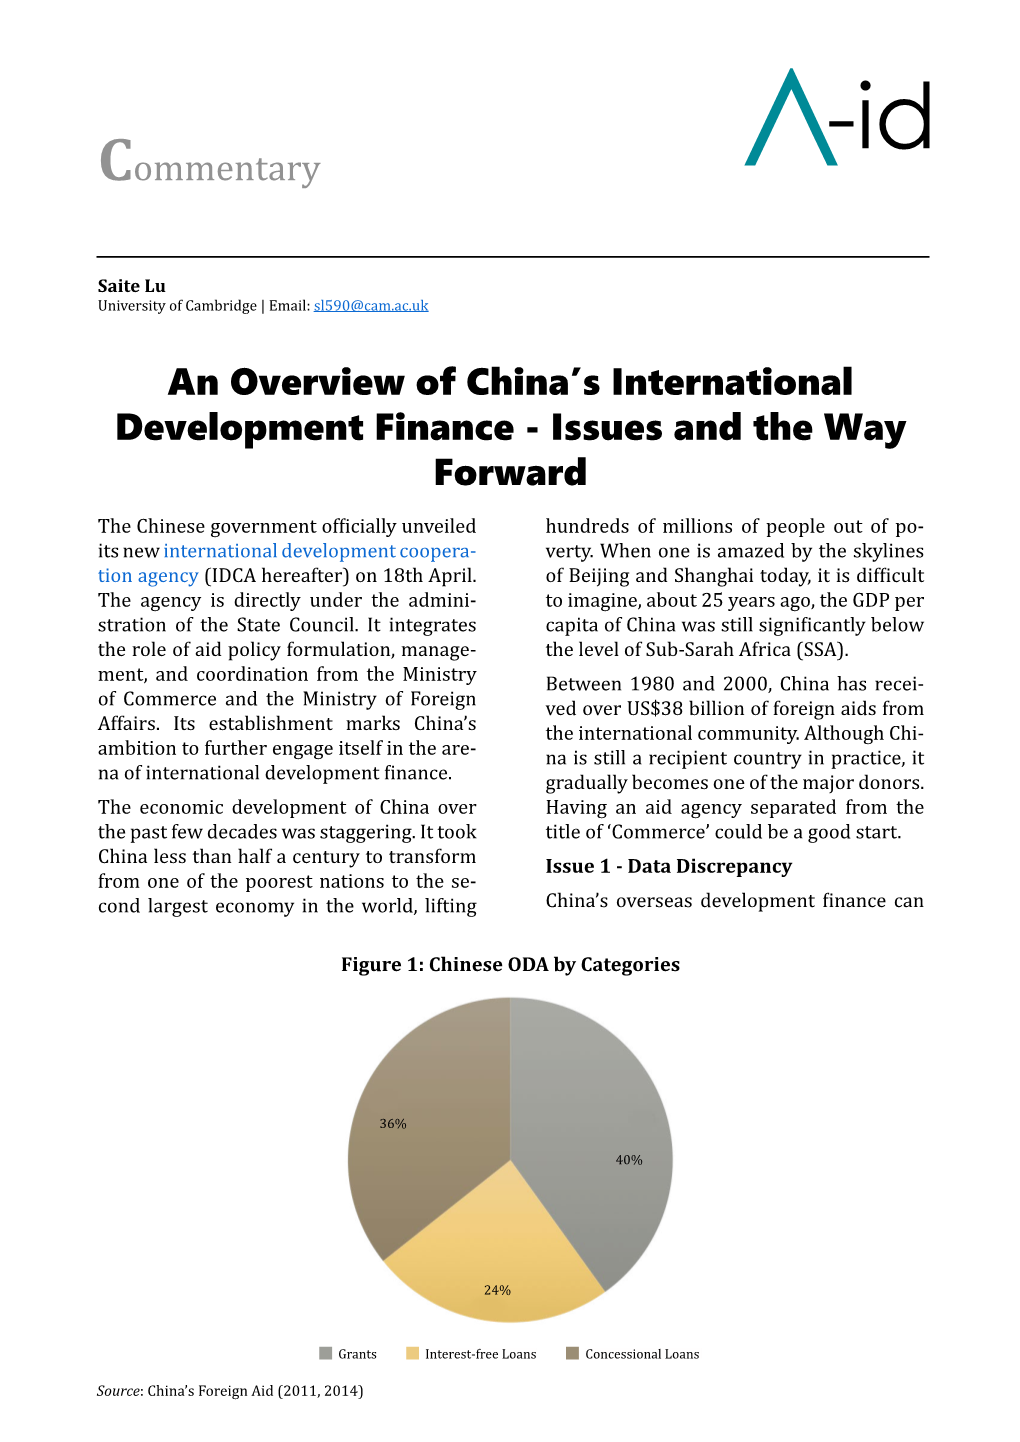 An Overview of China's International Development Finance